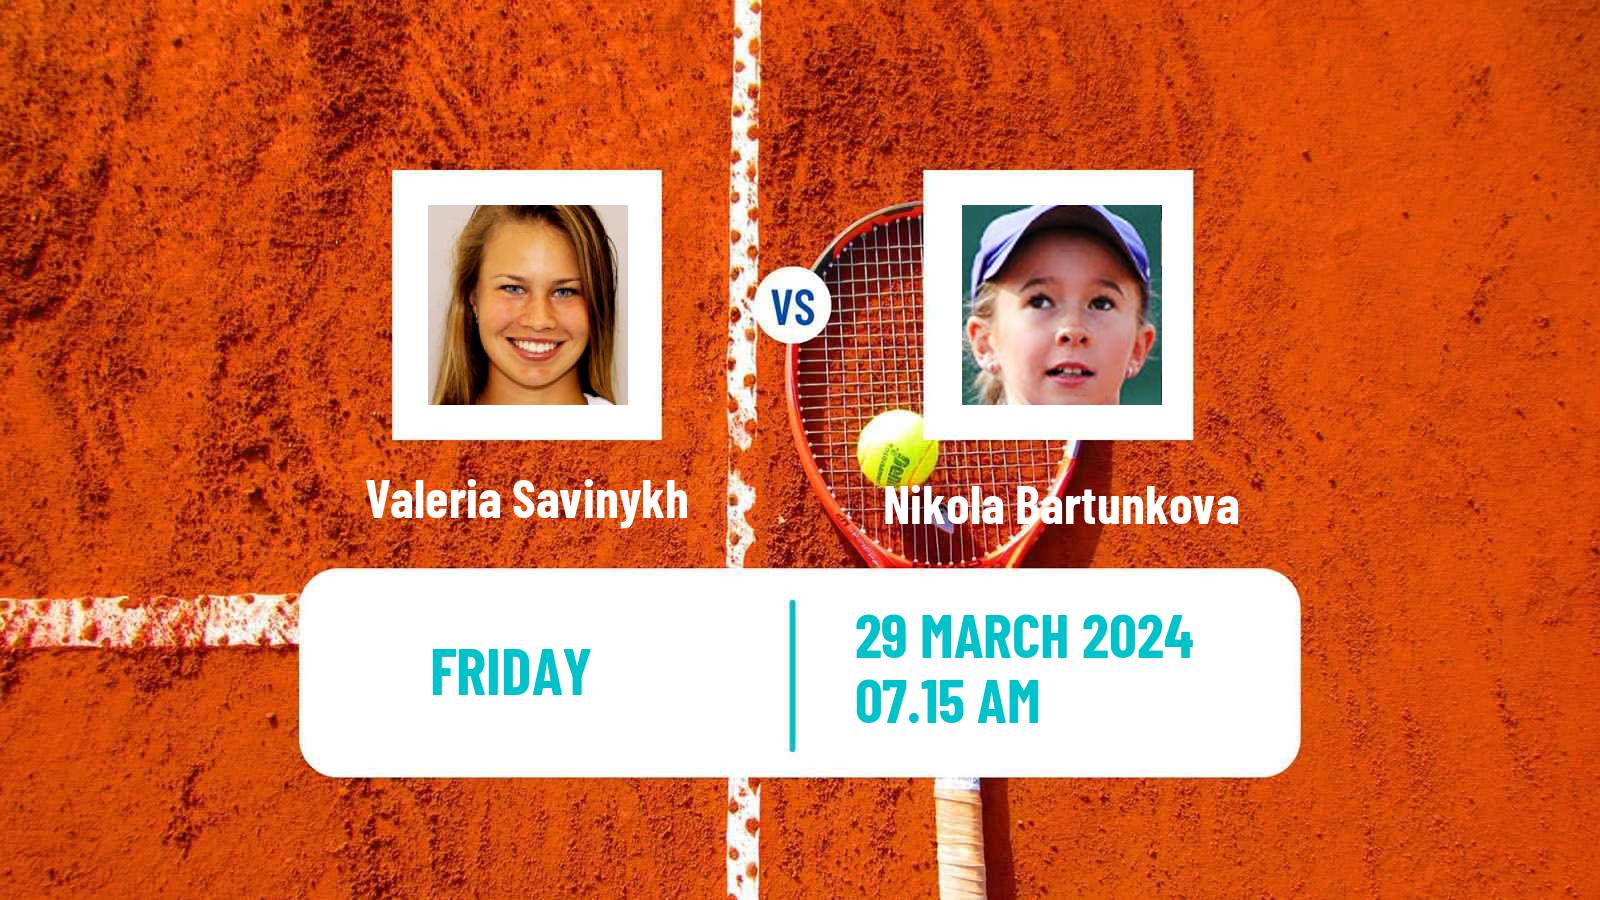 Tennis ITF W50 Murska Sobota Women Valeria Savinykh - Nikola Bartunkova